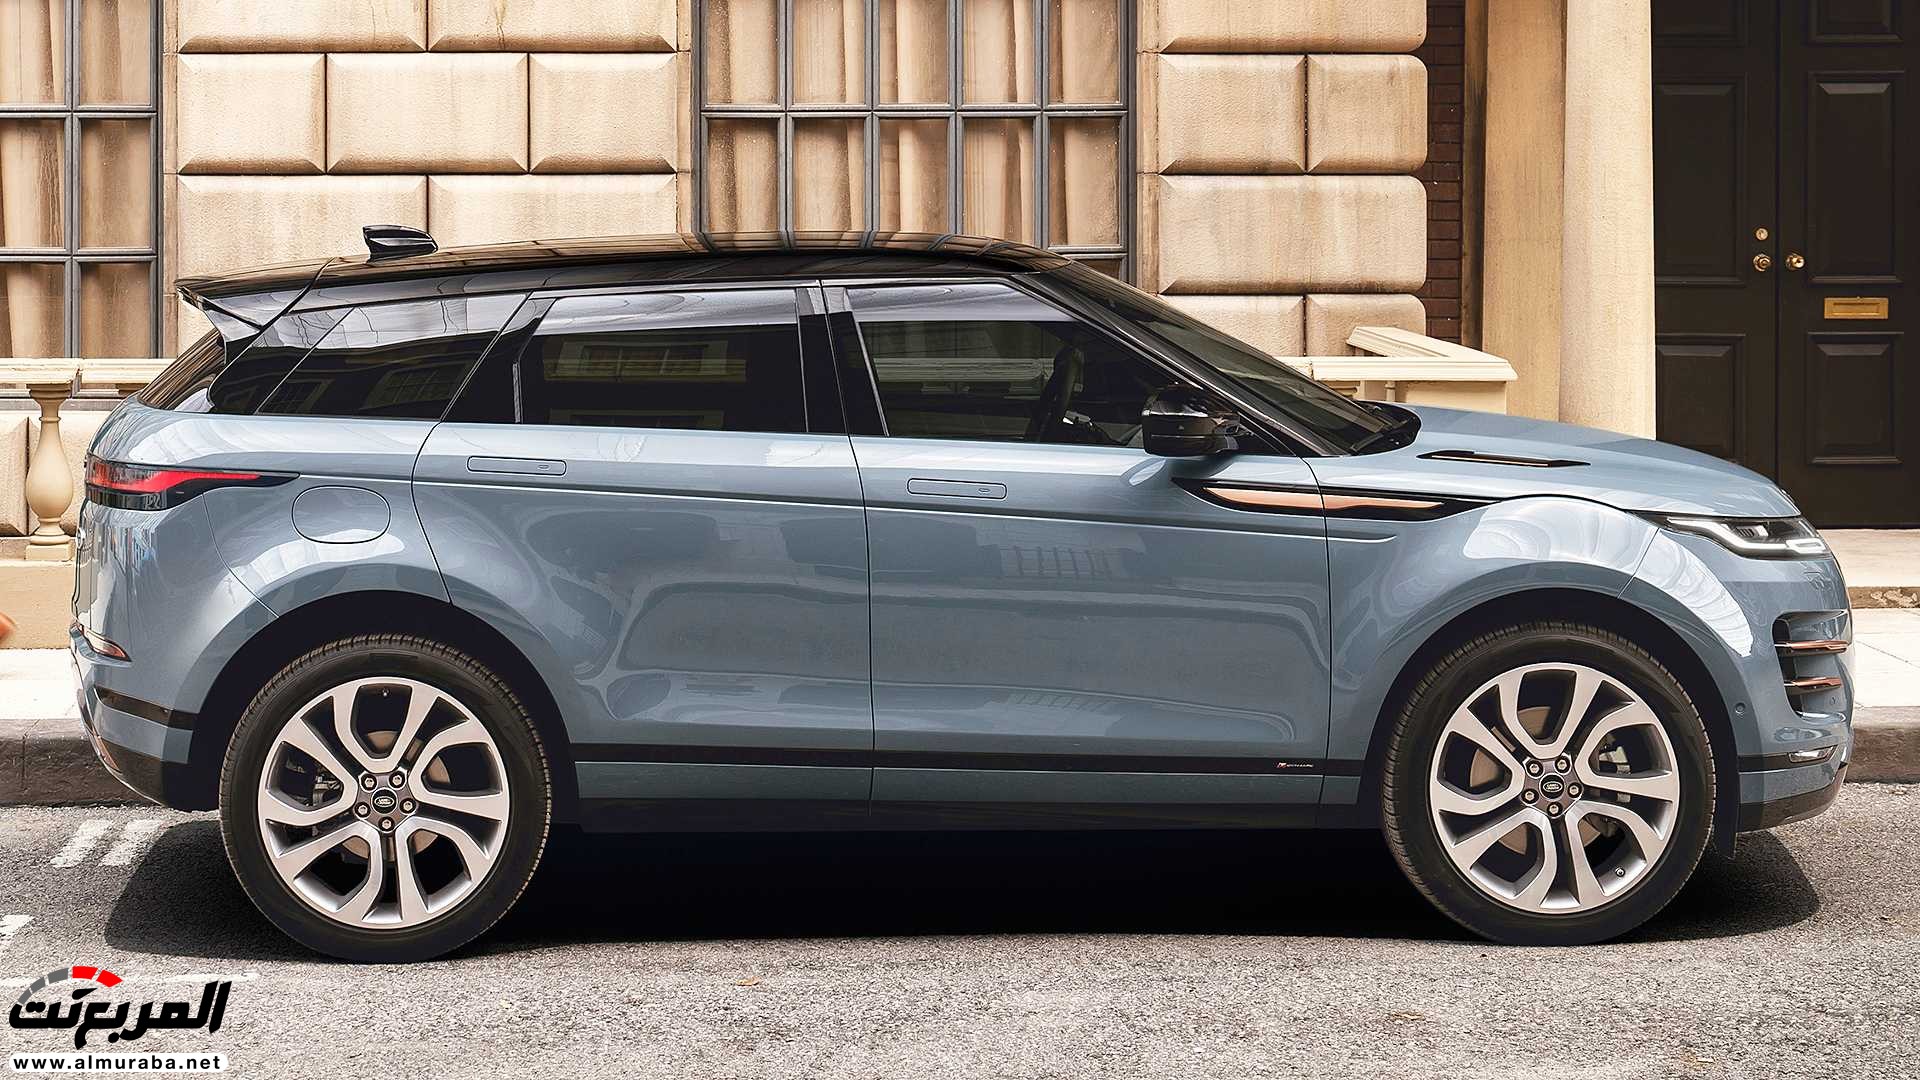 اهم 7 معلومات عن رنج روفر ايفوك 2020 الجديدة كلياً Range Rover Evoque 372